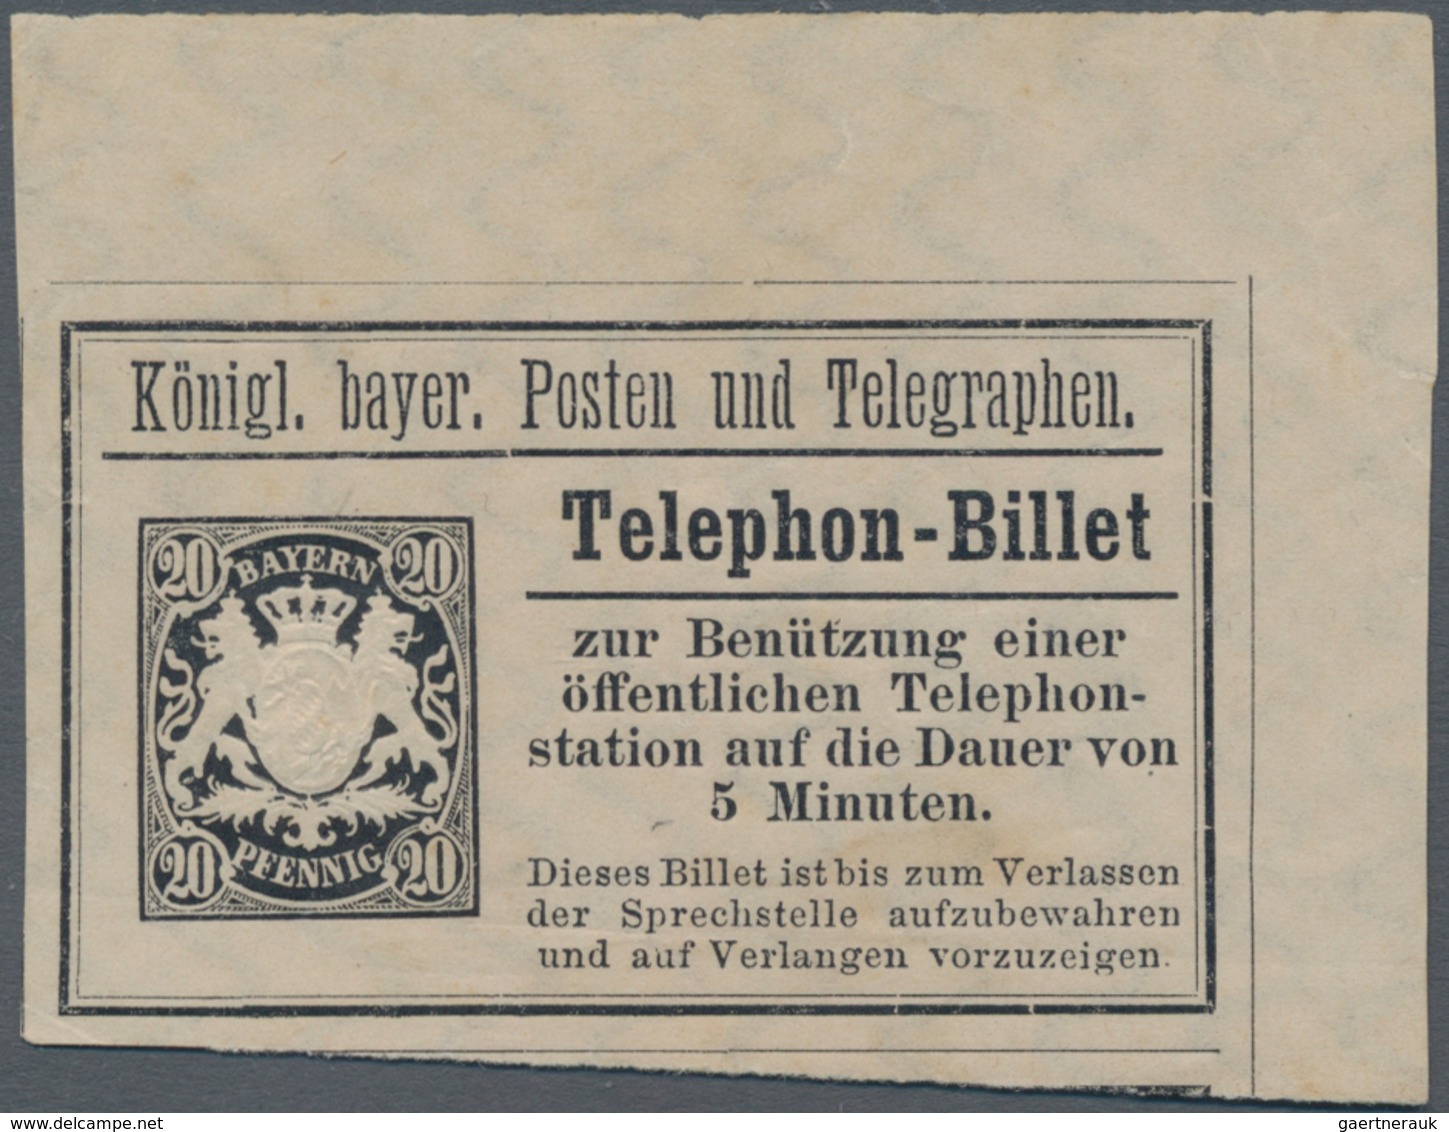 Bayern - Marken und Briefe: Bayern Pfennigzeit  1) 1890, 2 Mark gelborange auf rötlichem Papier als